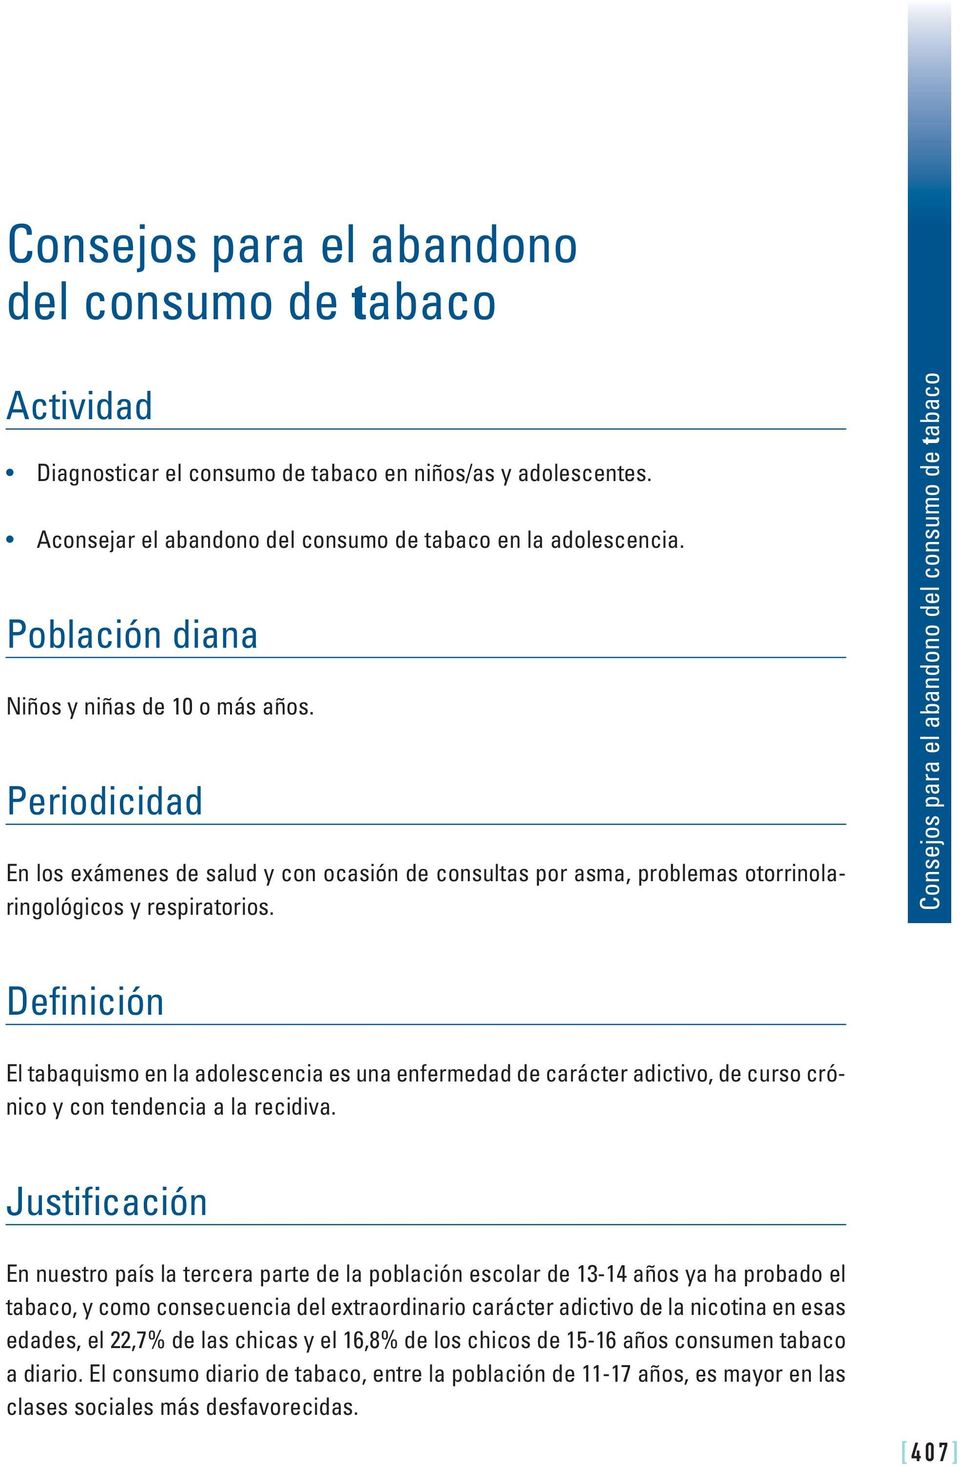 Consejos para el abandono del consumo de tabaco Definición El tabaquismo en la adolescencia es una enfermedad de carácter adictivo, de curso crónico y con tendencia a la recidiva.